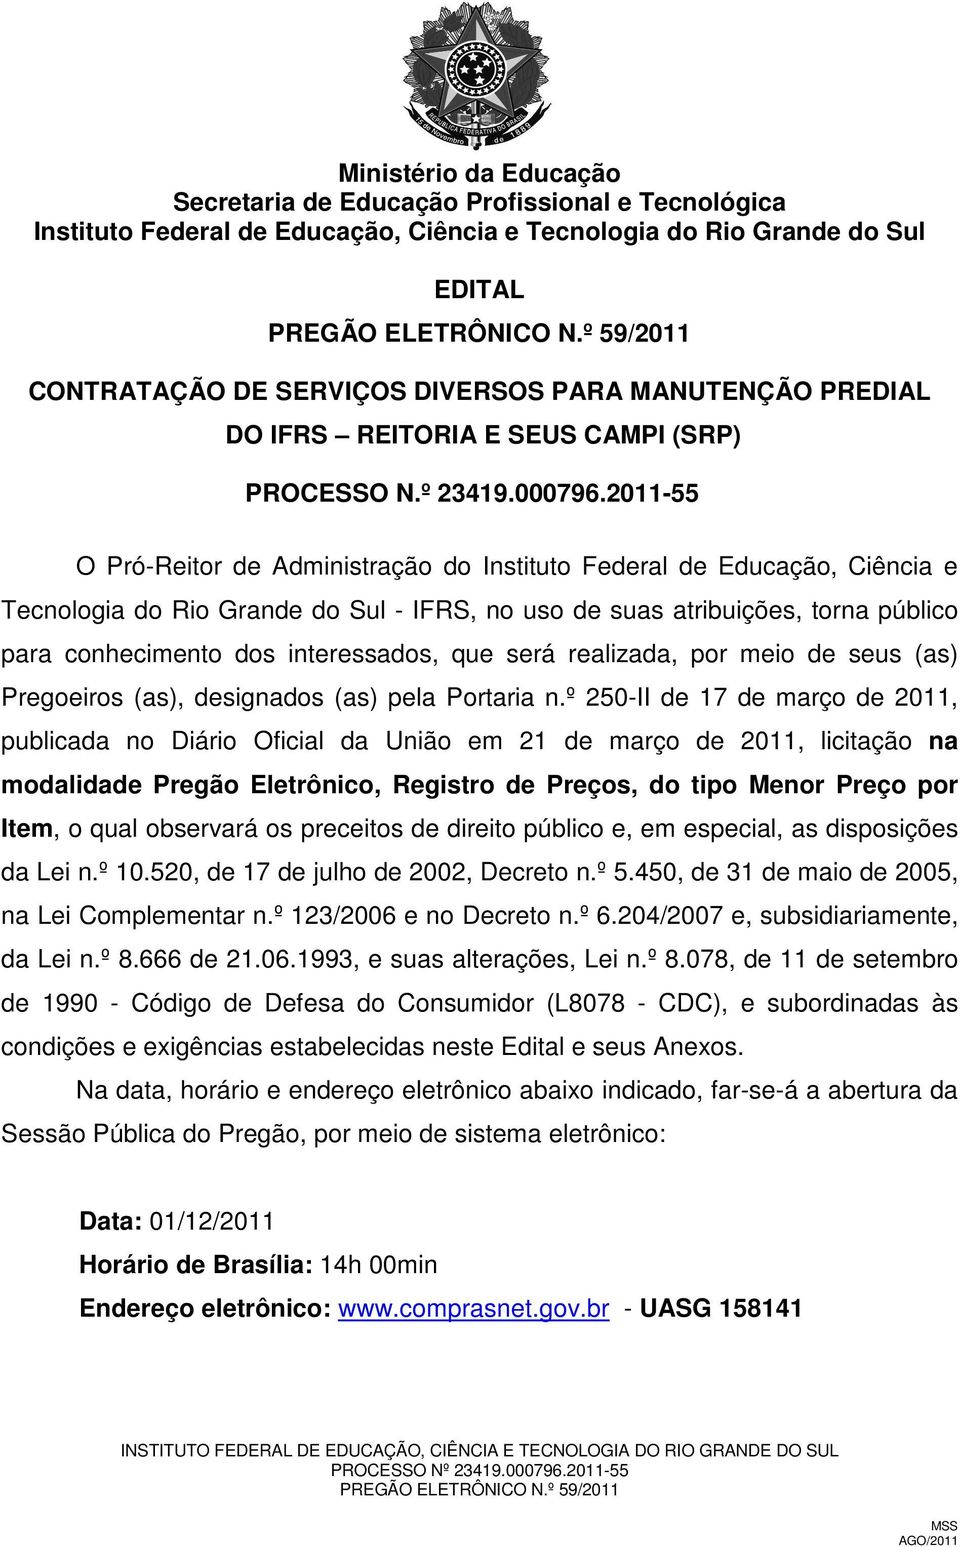 2011-55 O Pró-Reitor de Administração do Instituto Federal de Educação, Ciência e Tecnologia do Rio Grande do Sul - IFRS, no uso de suas atribuições, torna público para conhecimento dos interessados,